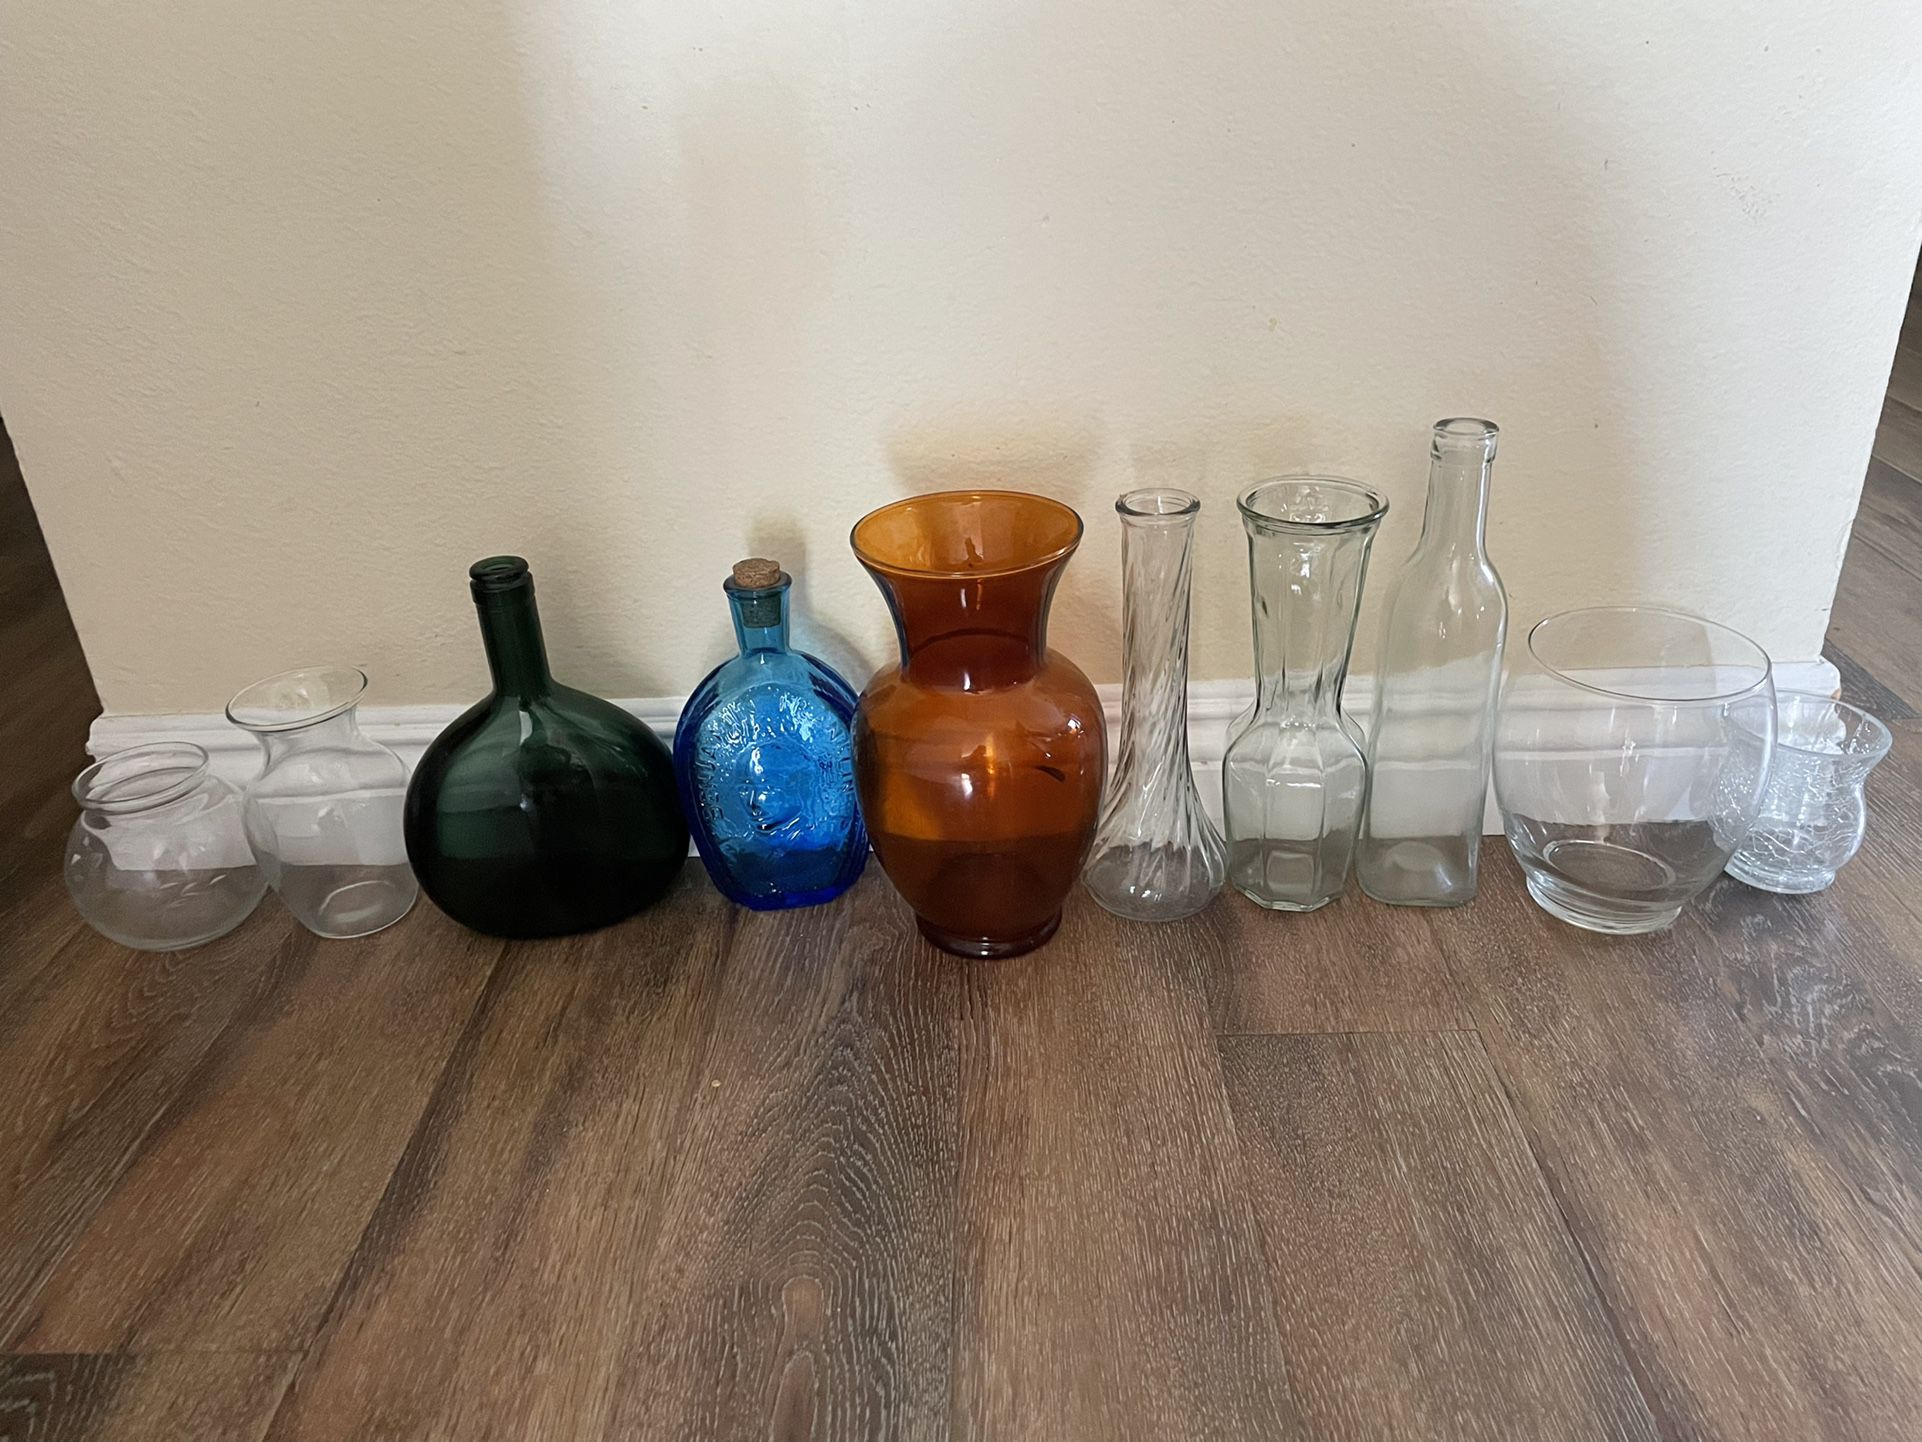 Glasswares $1